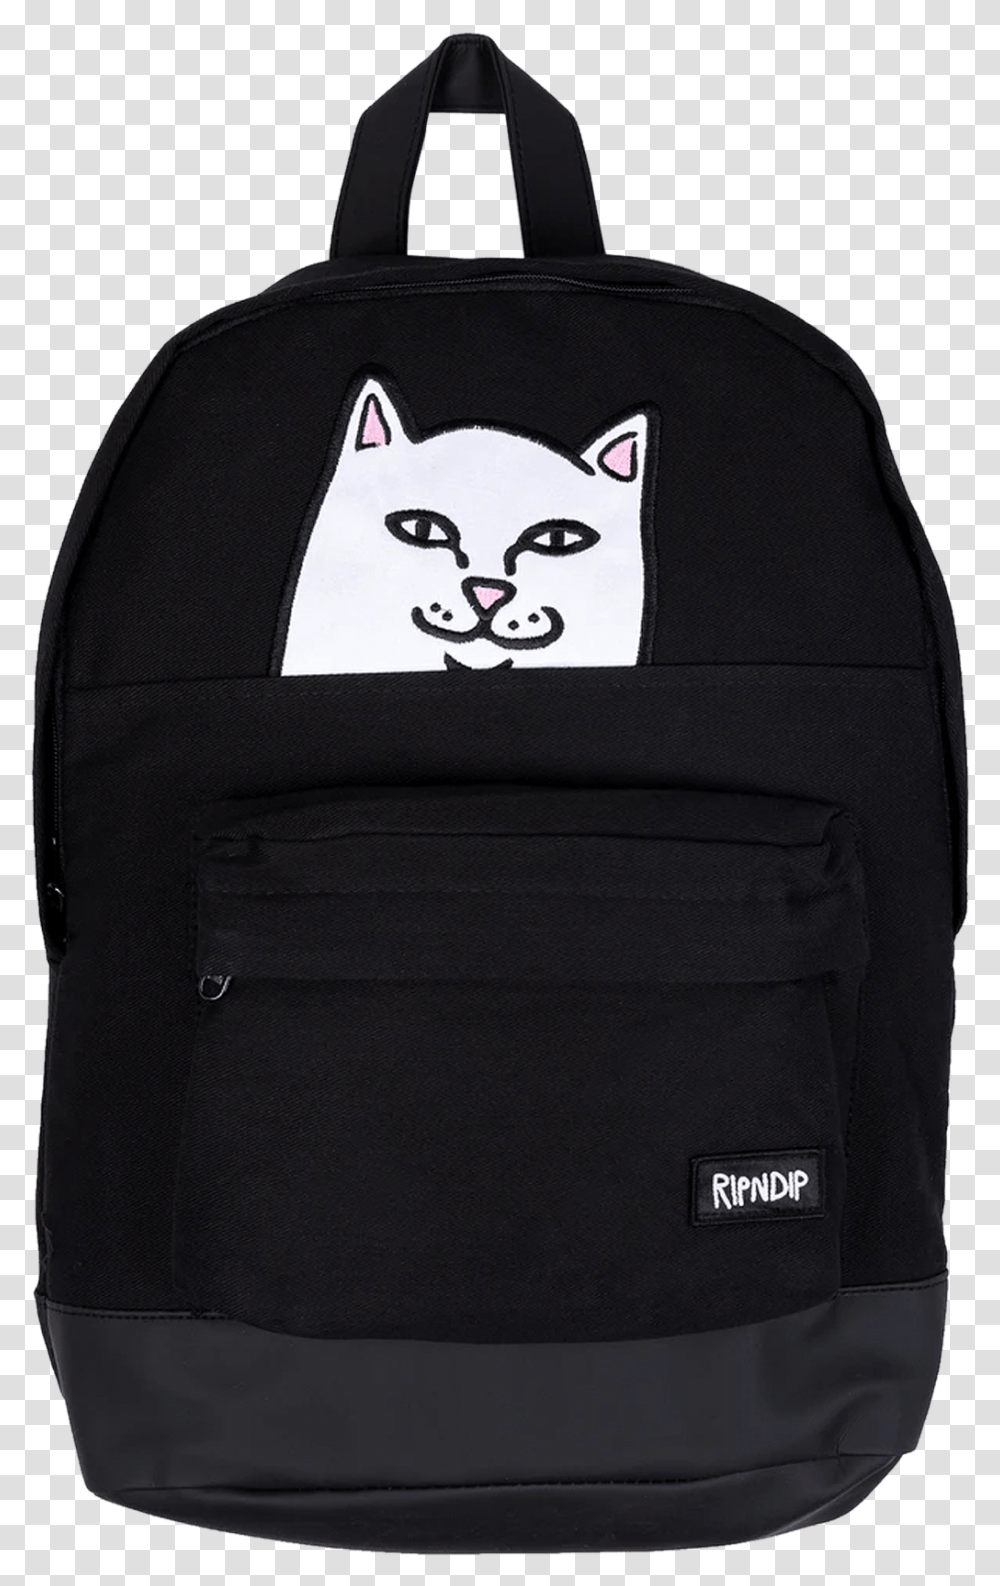 Ripndip Backpack Black, Bag, Cat, Pet, Mammal Transparent Png